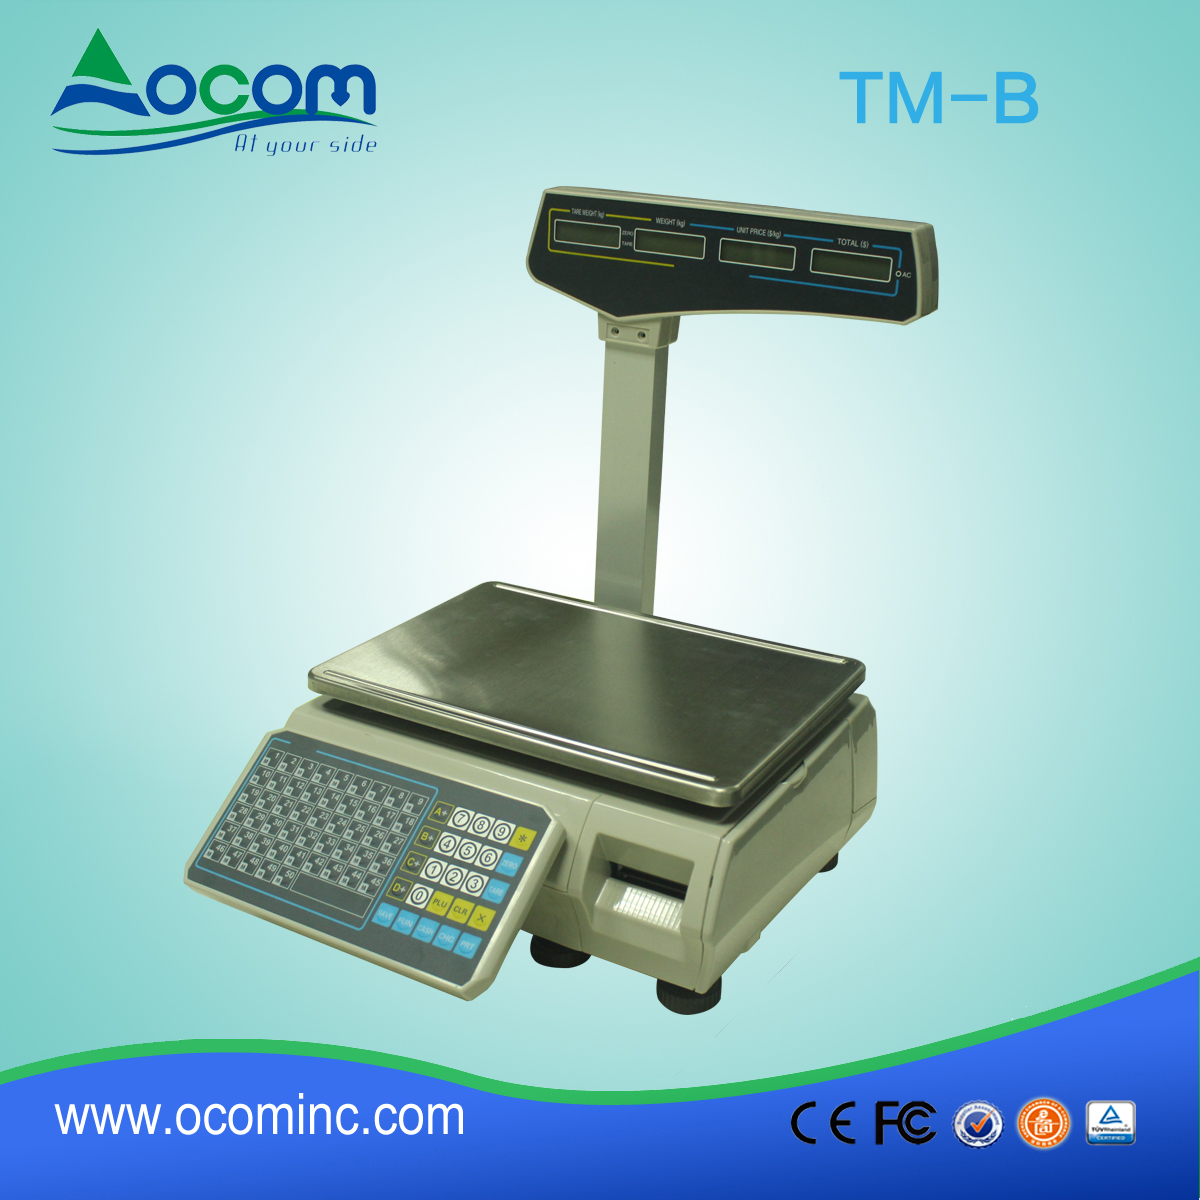 Nouveaux produits TM-B Barcode Printing Scale